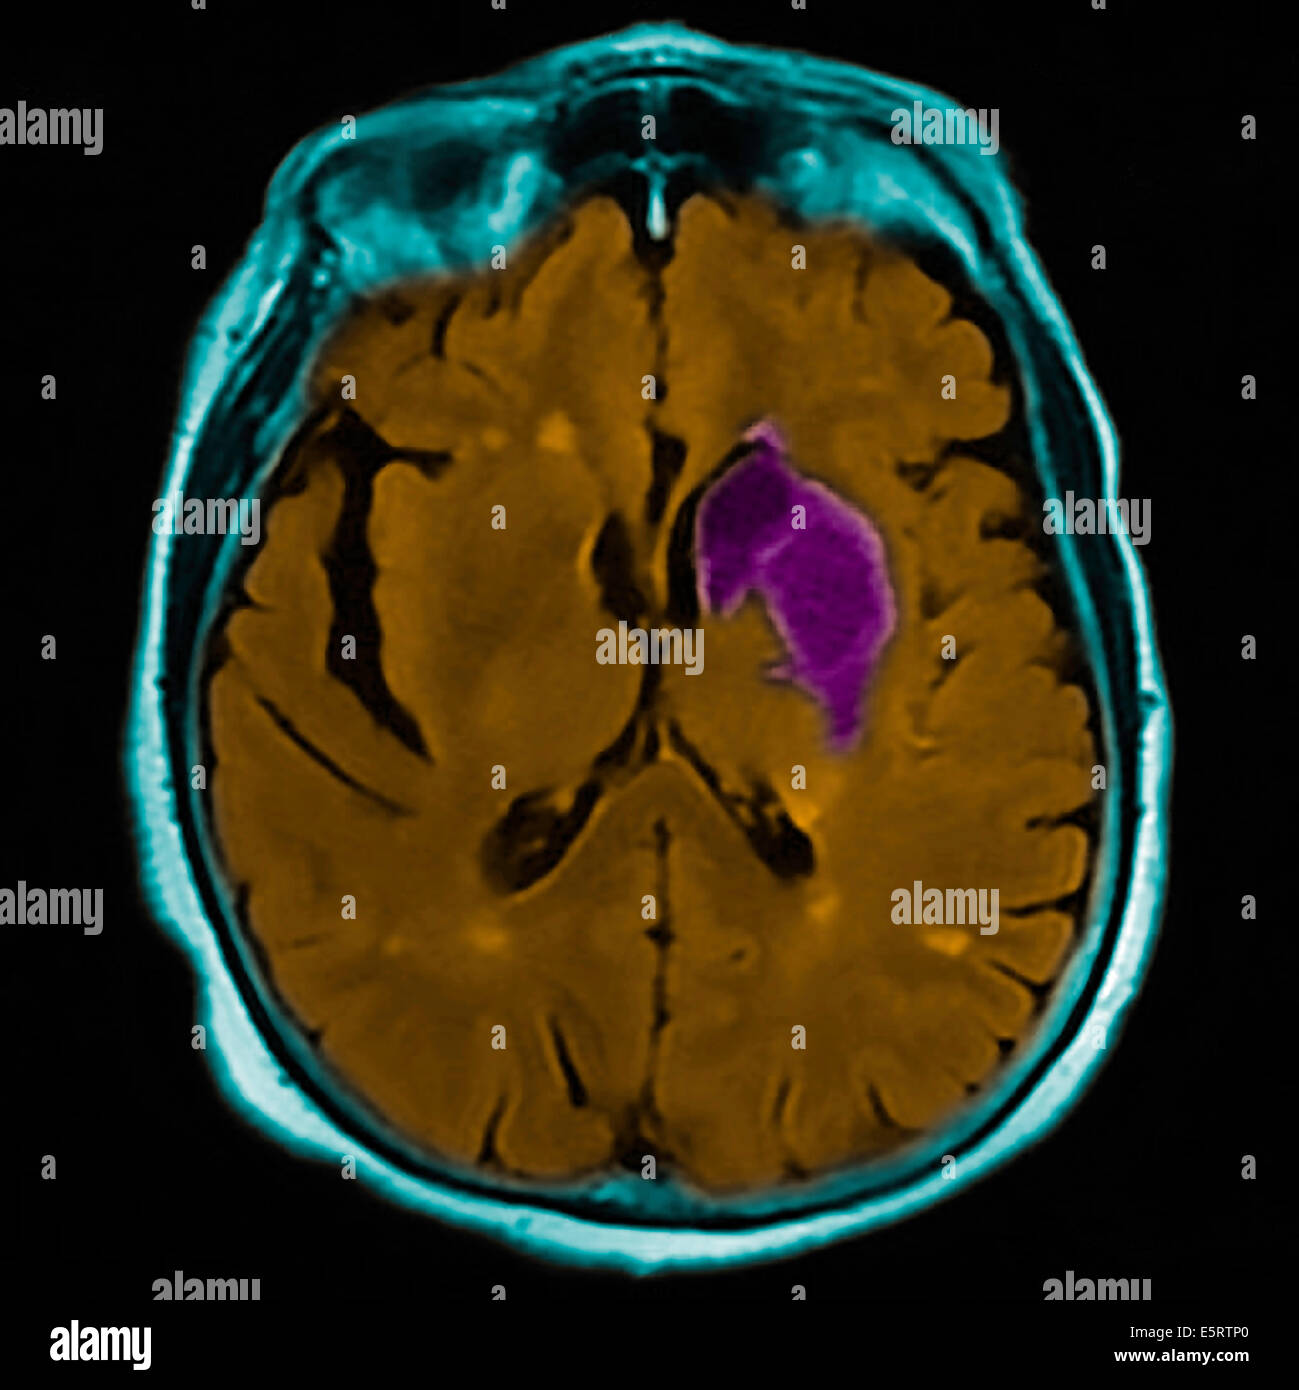 Farbige Magnetresonanz-Bildgebung (MRI)-Scan und CT eine axiale Schnitt durch das Gehirn des Patienten, zeigt den Schaden Stockfoto